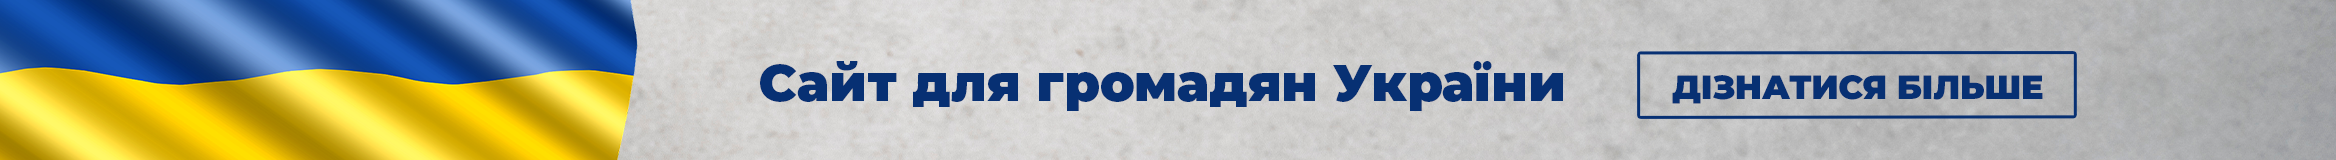 Grafika przedstawia flagę Ukrainy po lewej stronie, po prawej stronie tekst w języku ukraińskim: Сайт для громадян України. Дізнатися більше.